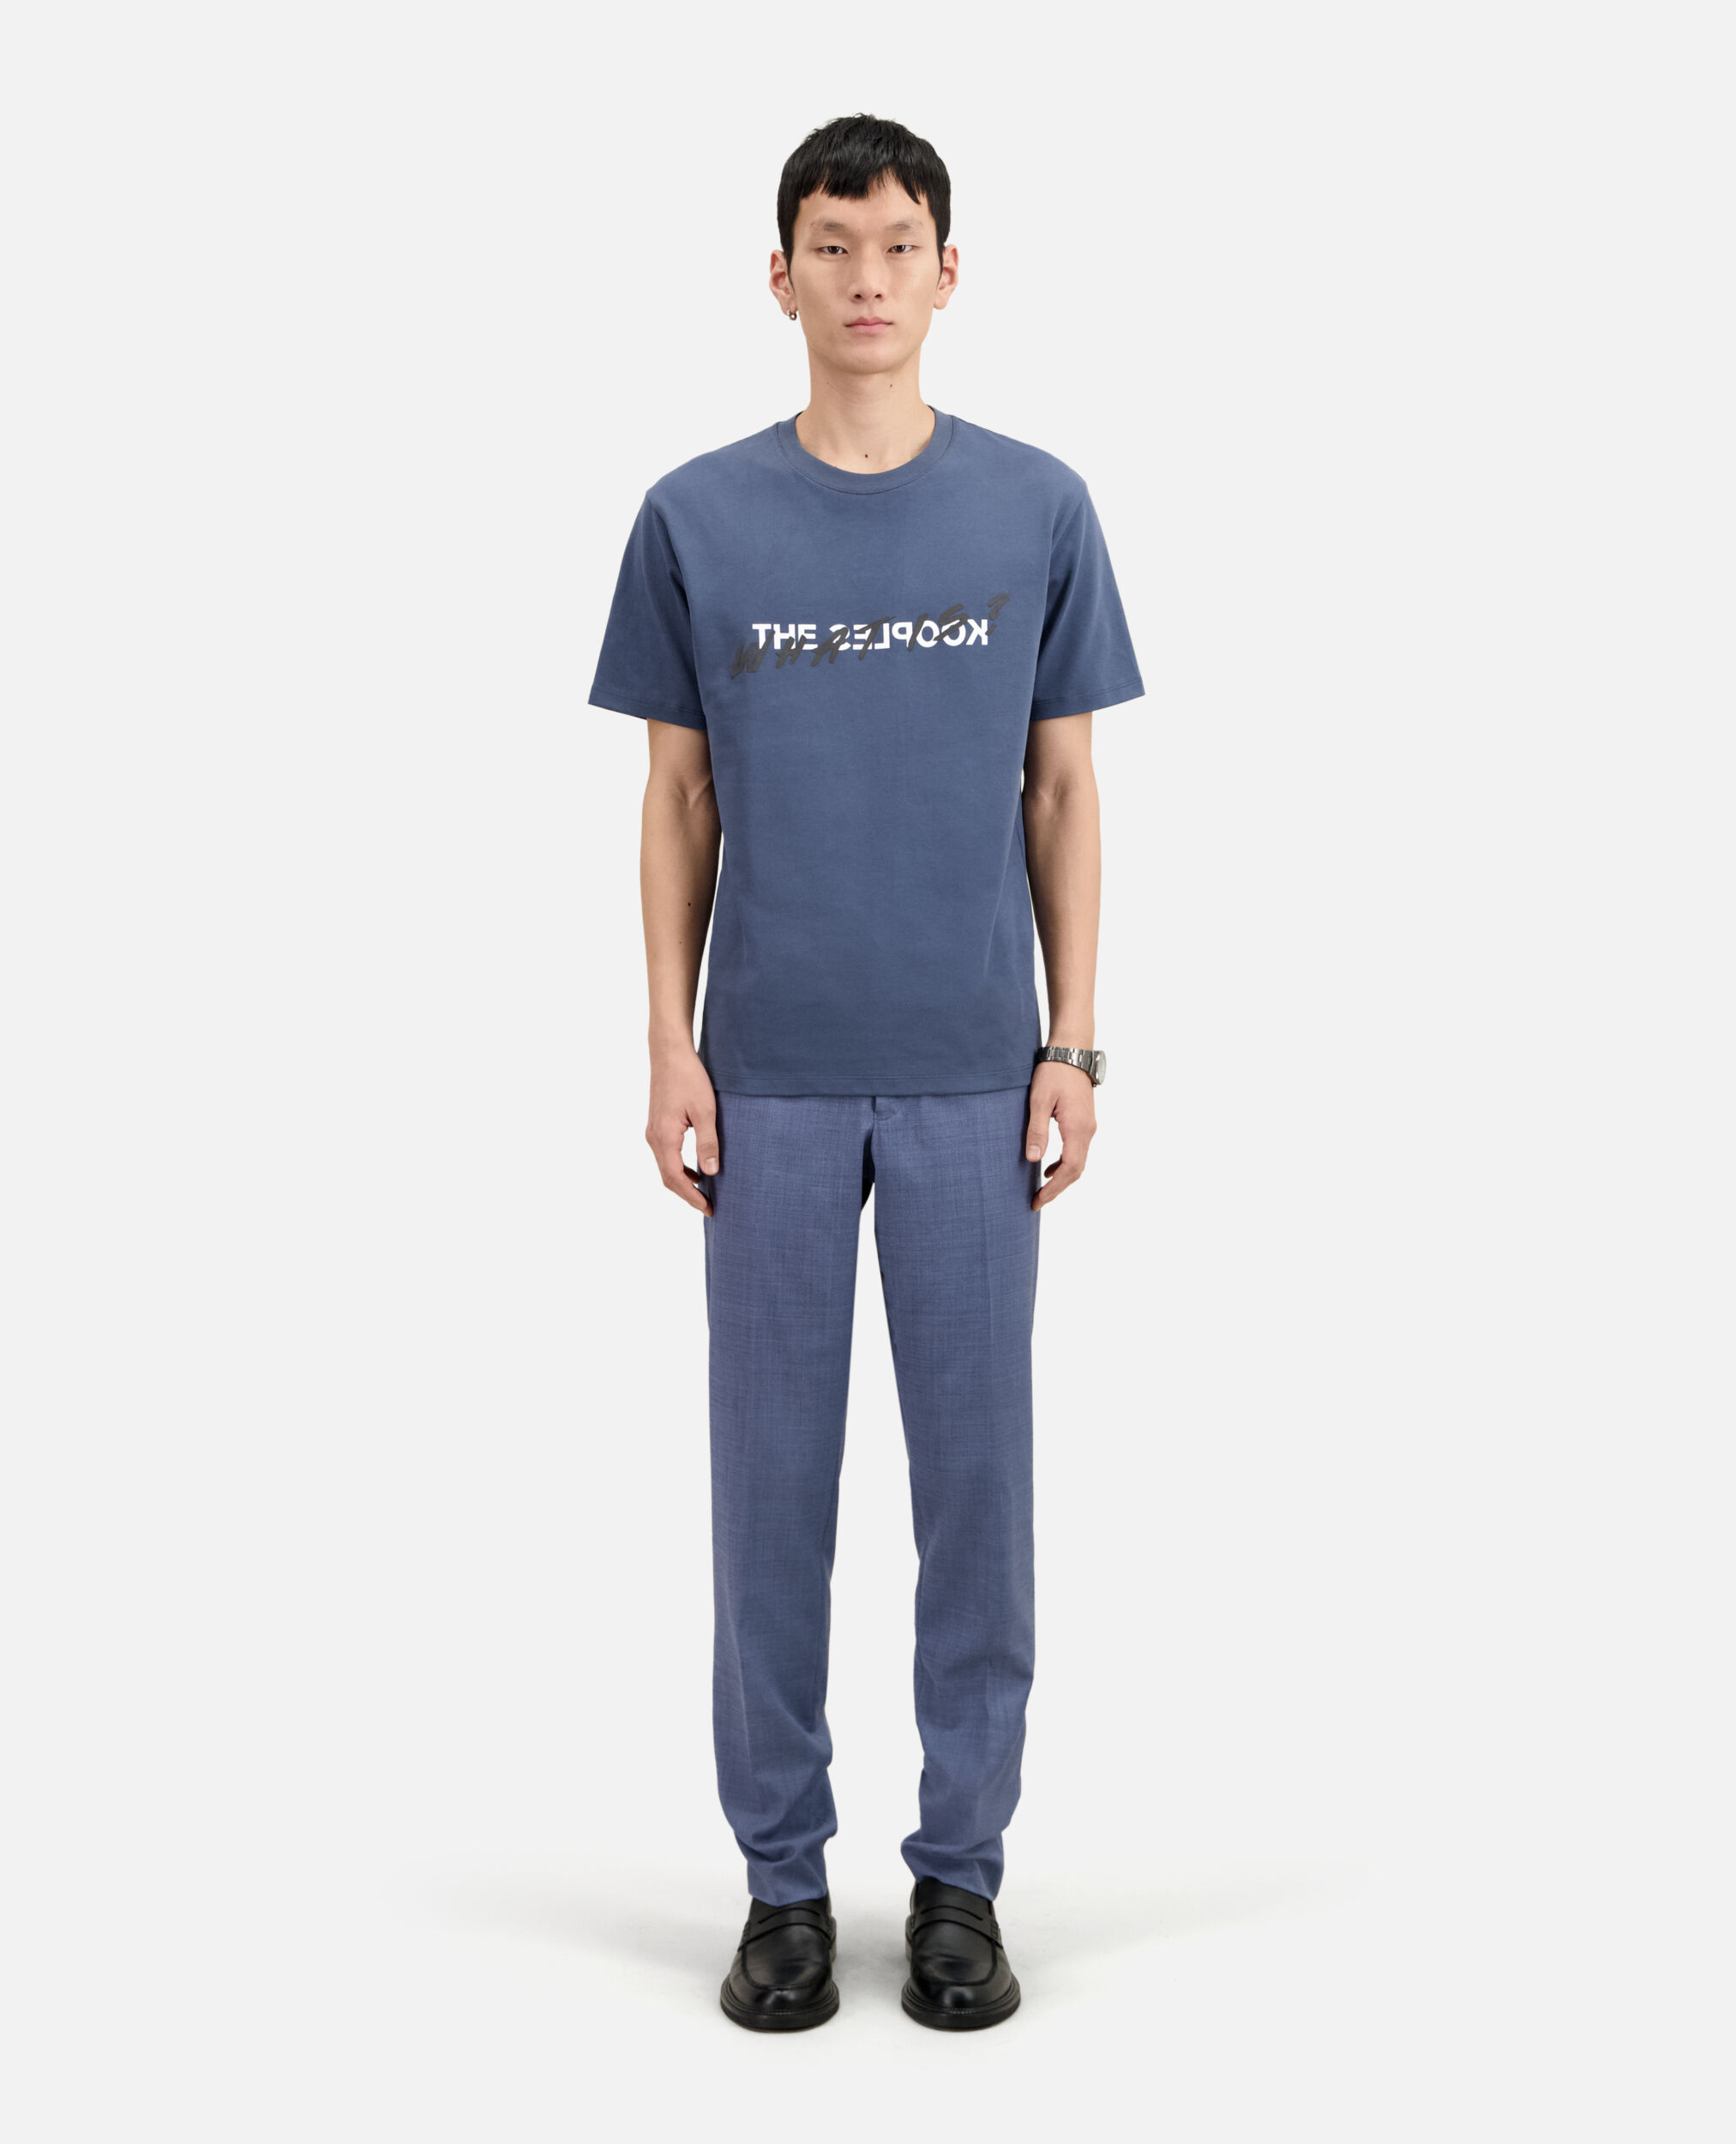 Nachtblaues T-Shirt mit „What is“-Schriftzug, DARK NAVY / DARK NAVY, hi-res image number null